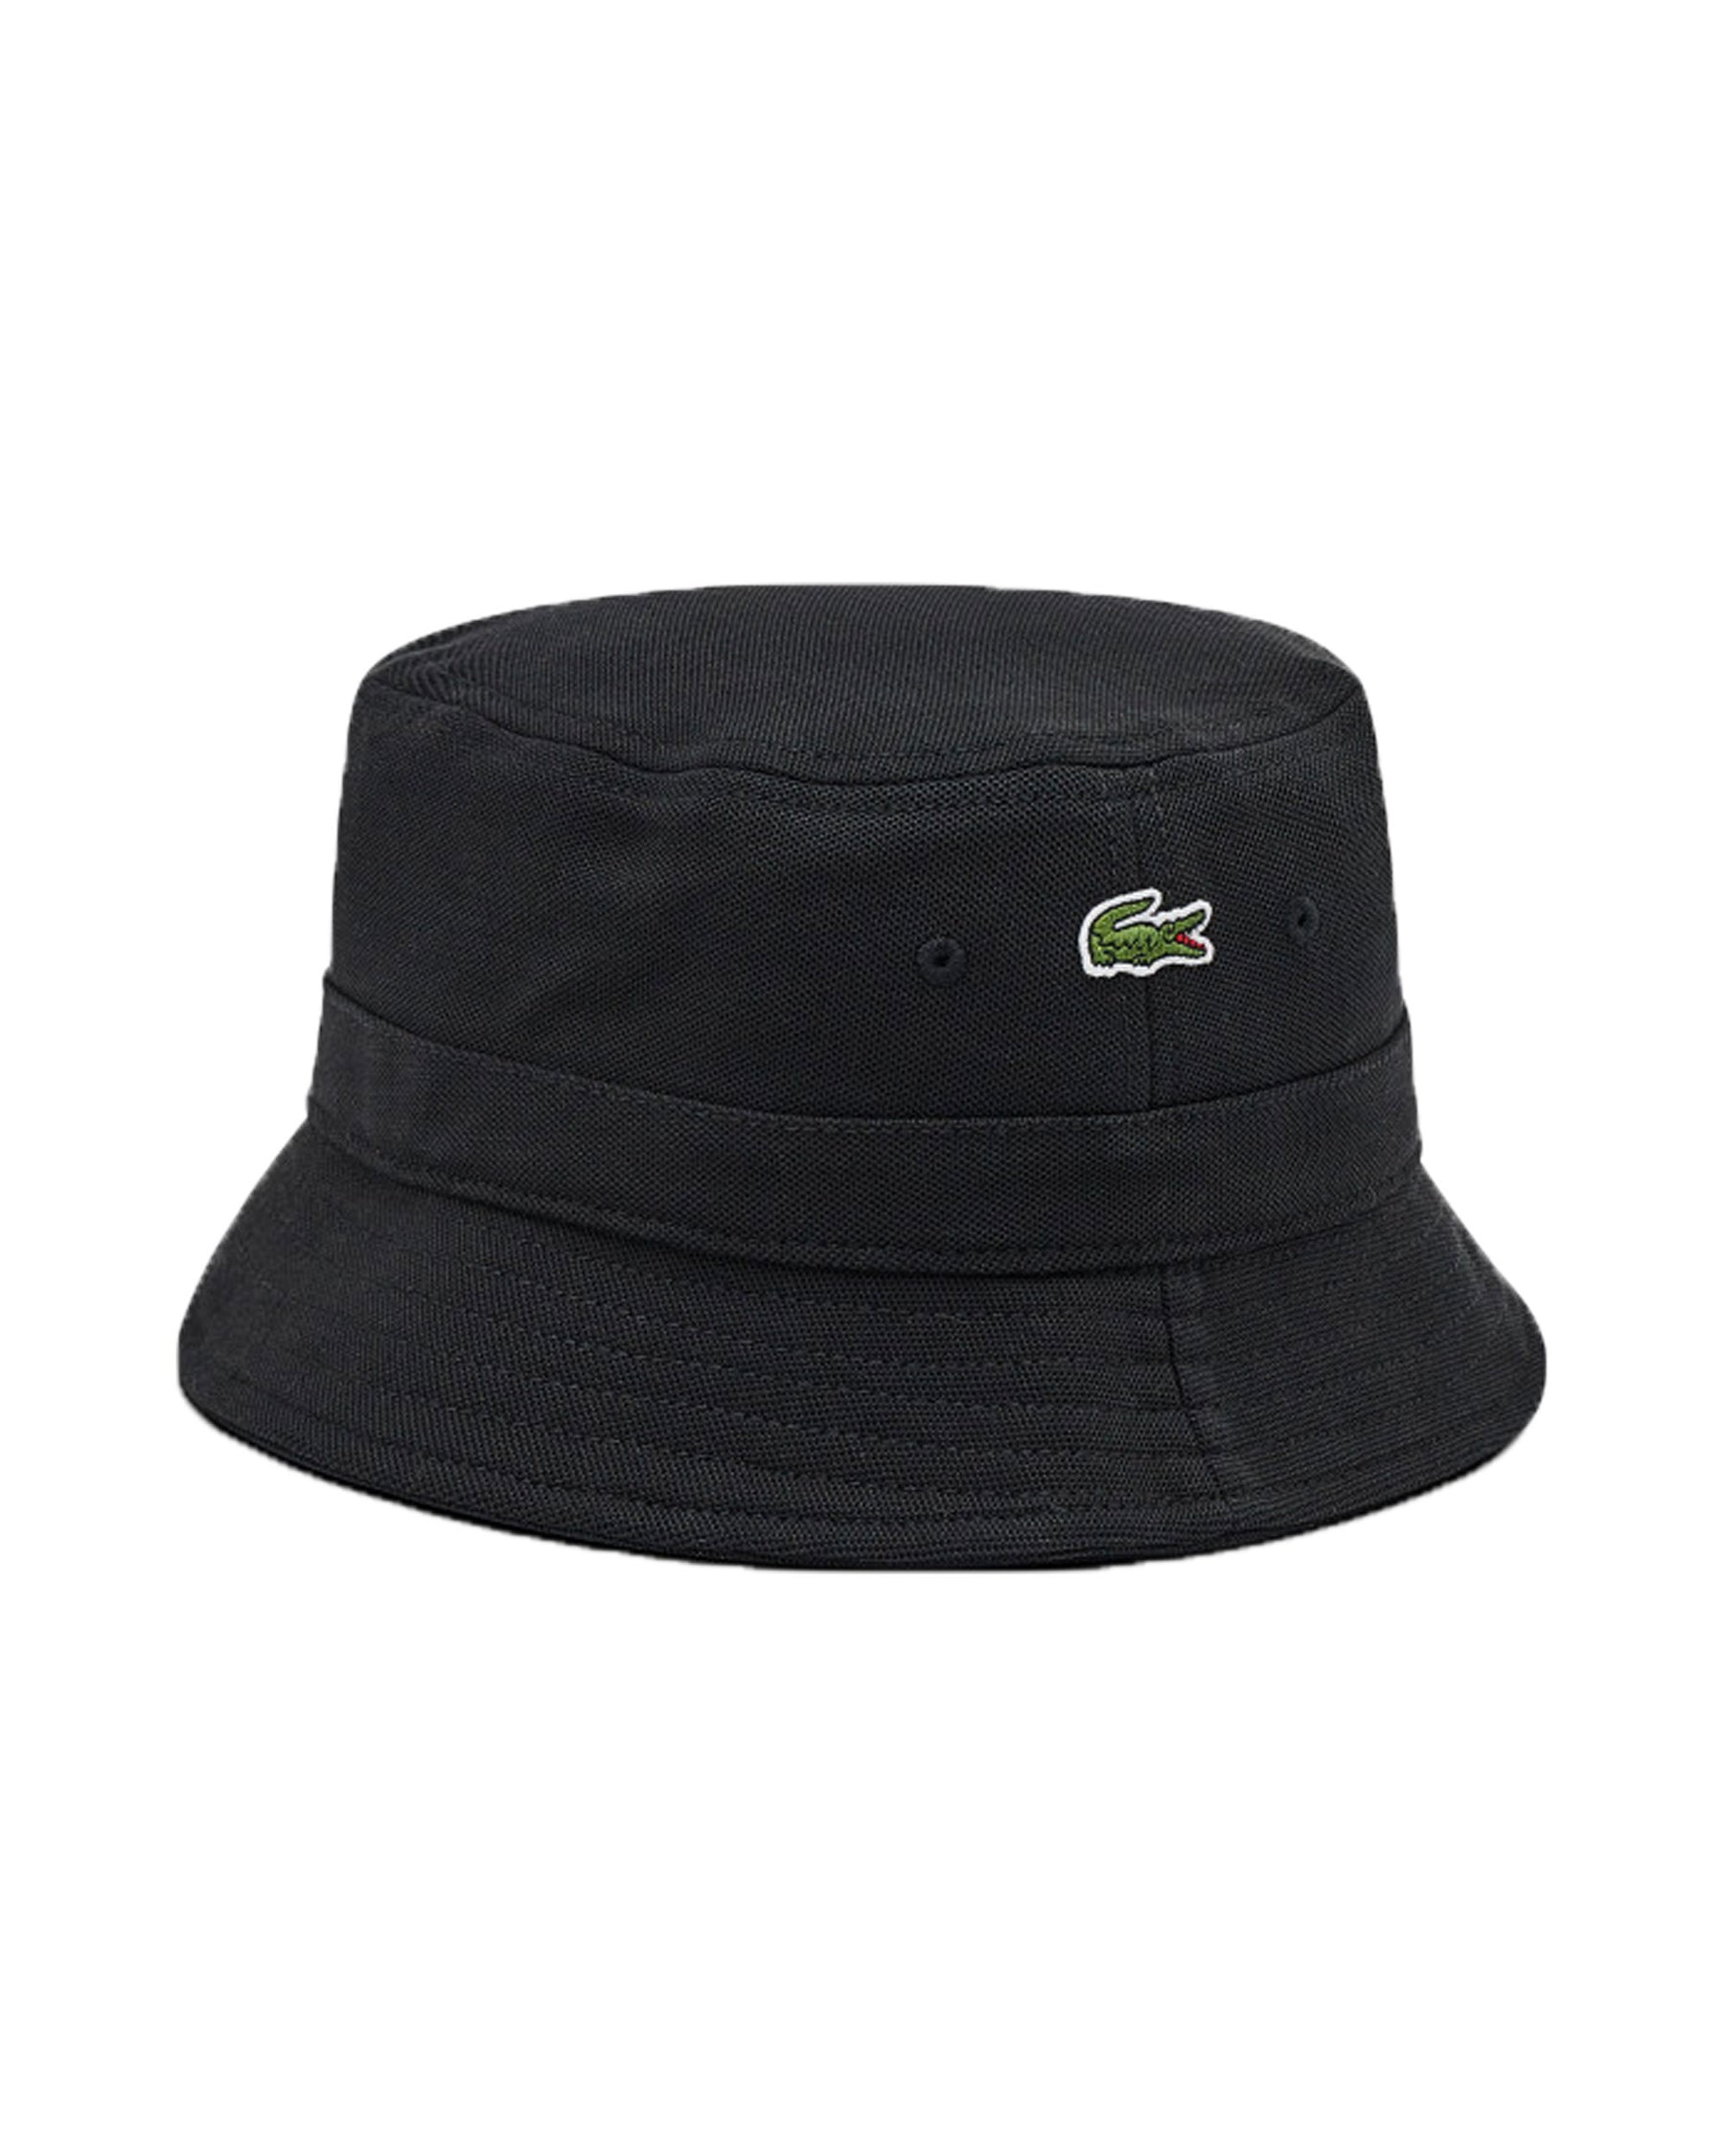 Bucket Hat Lacoste Black